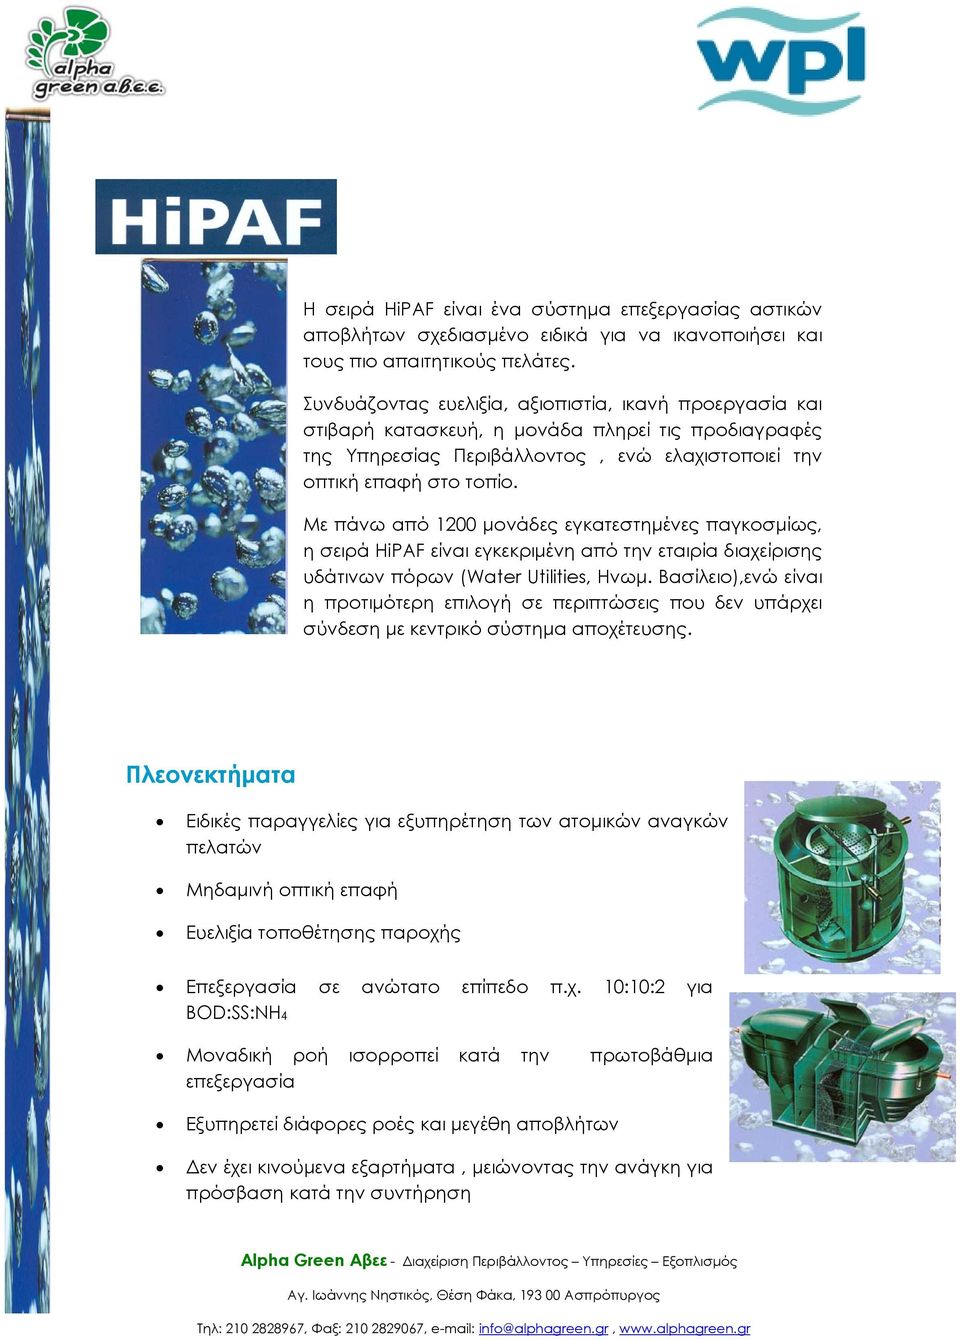 Με πάνω από 1200 μονάδες εγκατεστημένες παγκοσμίως, η σειρά HiPAF είναι εγκεκριμένη από την εταιρία διαχείρισης υδάτινων πόρων (Water Utilities, Ηνωμ.